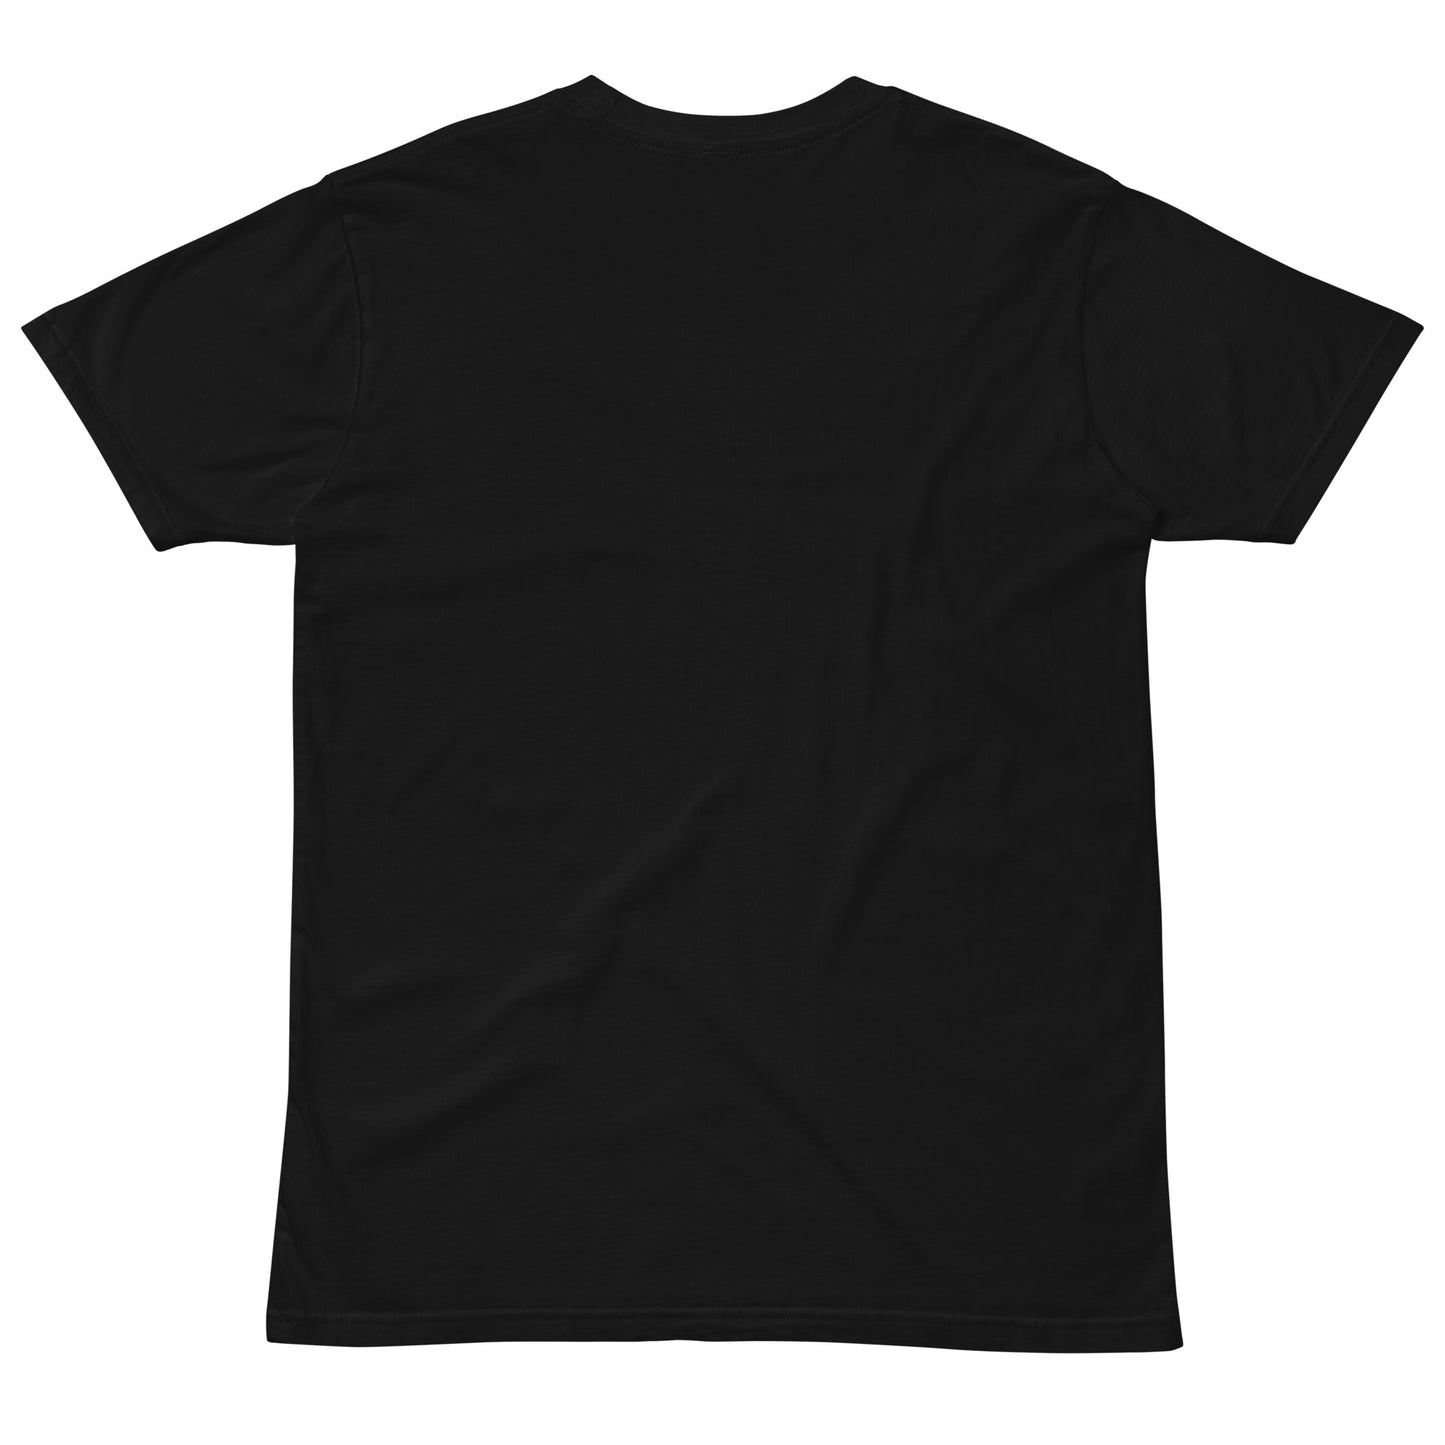 Unisex premium t-shirt - Summer